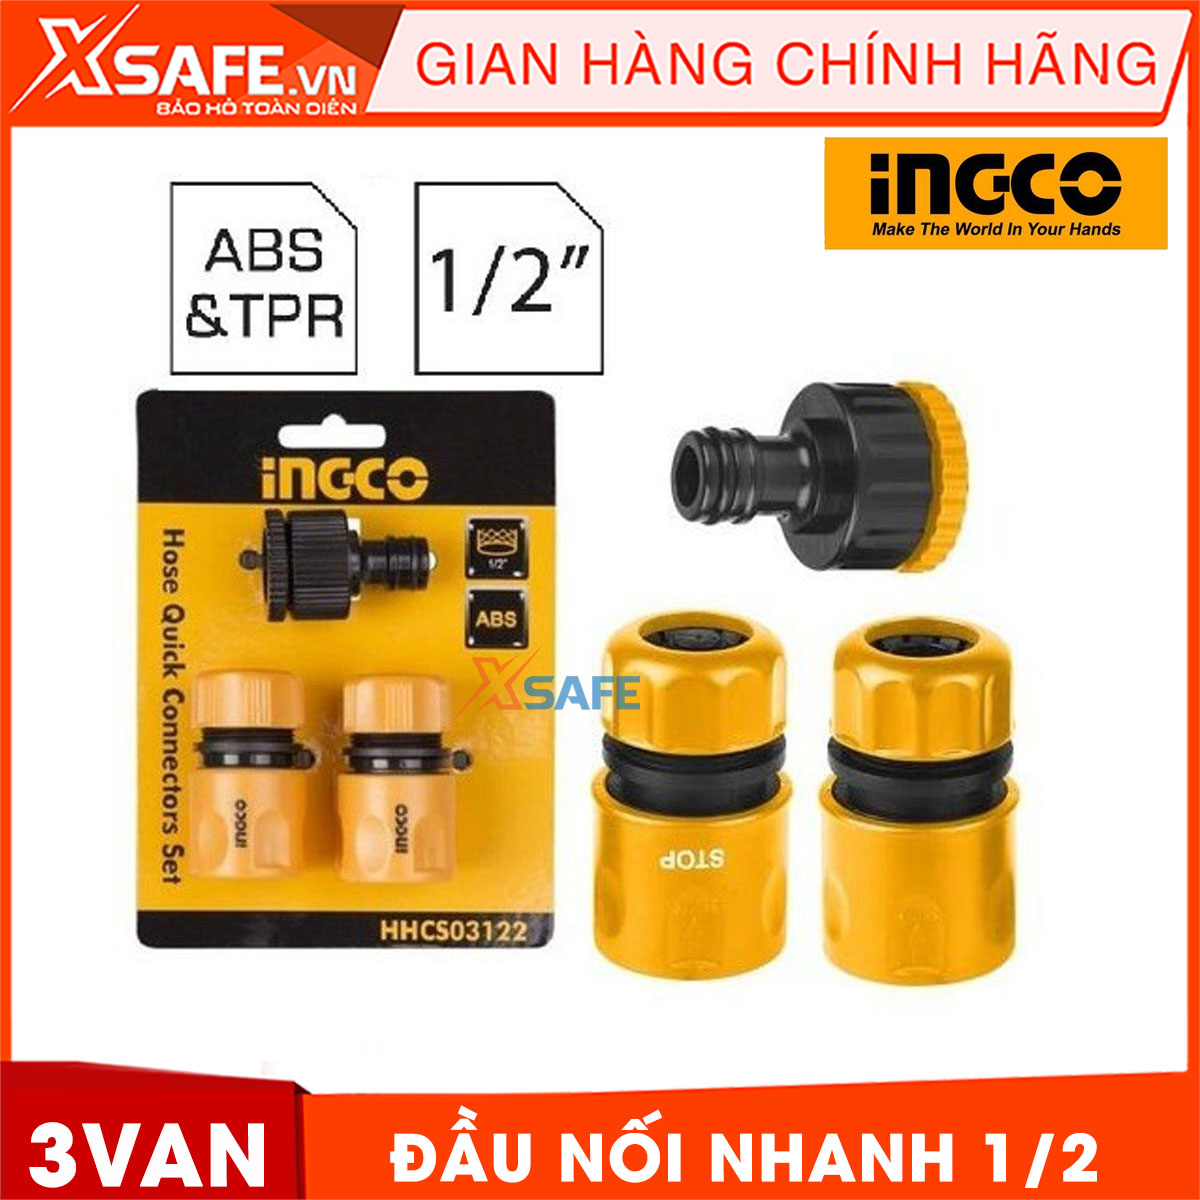 Bộ 3 đầu nối vòi phun xịt INGCO HHCS03122 làm từ nhựa ABS cao cấp. Bộ đầu nối vòi phun xịt Ingco gồm 3 đầu van có độ bền cao